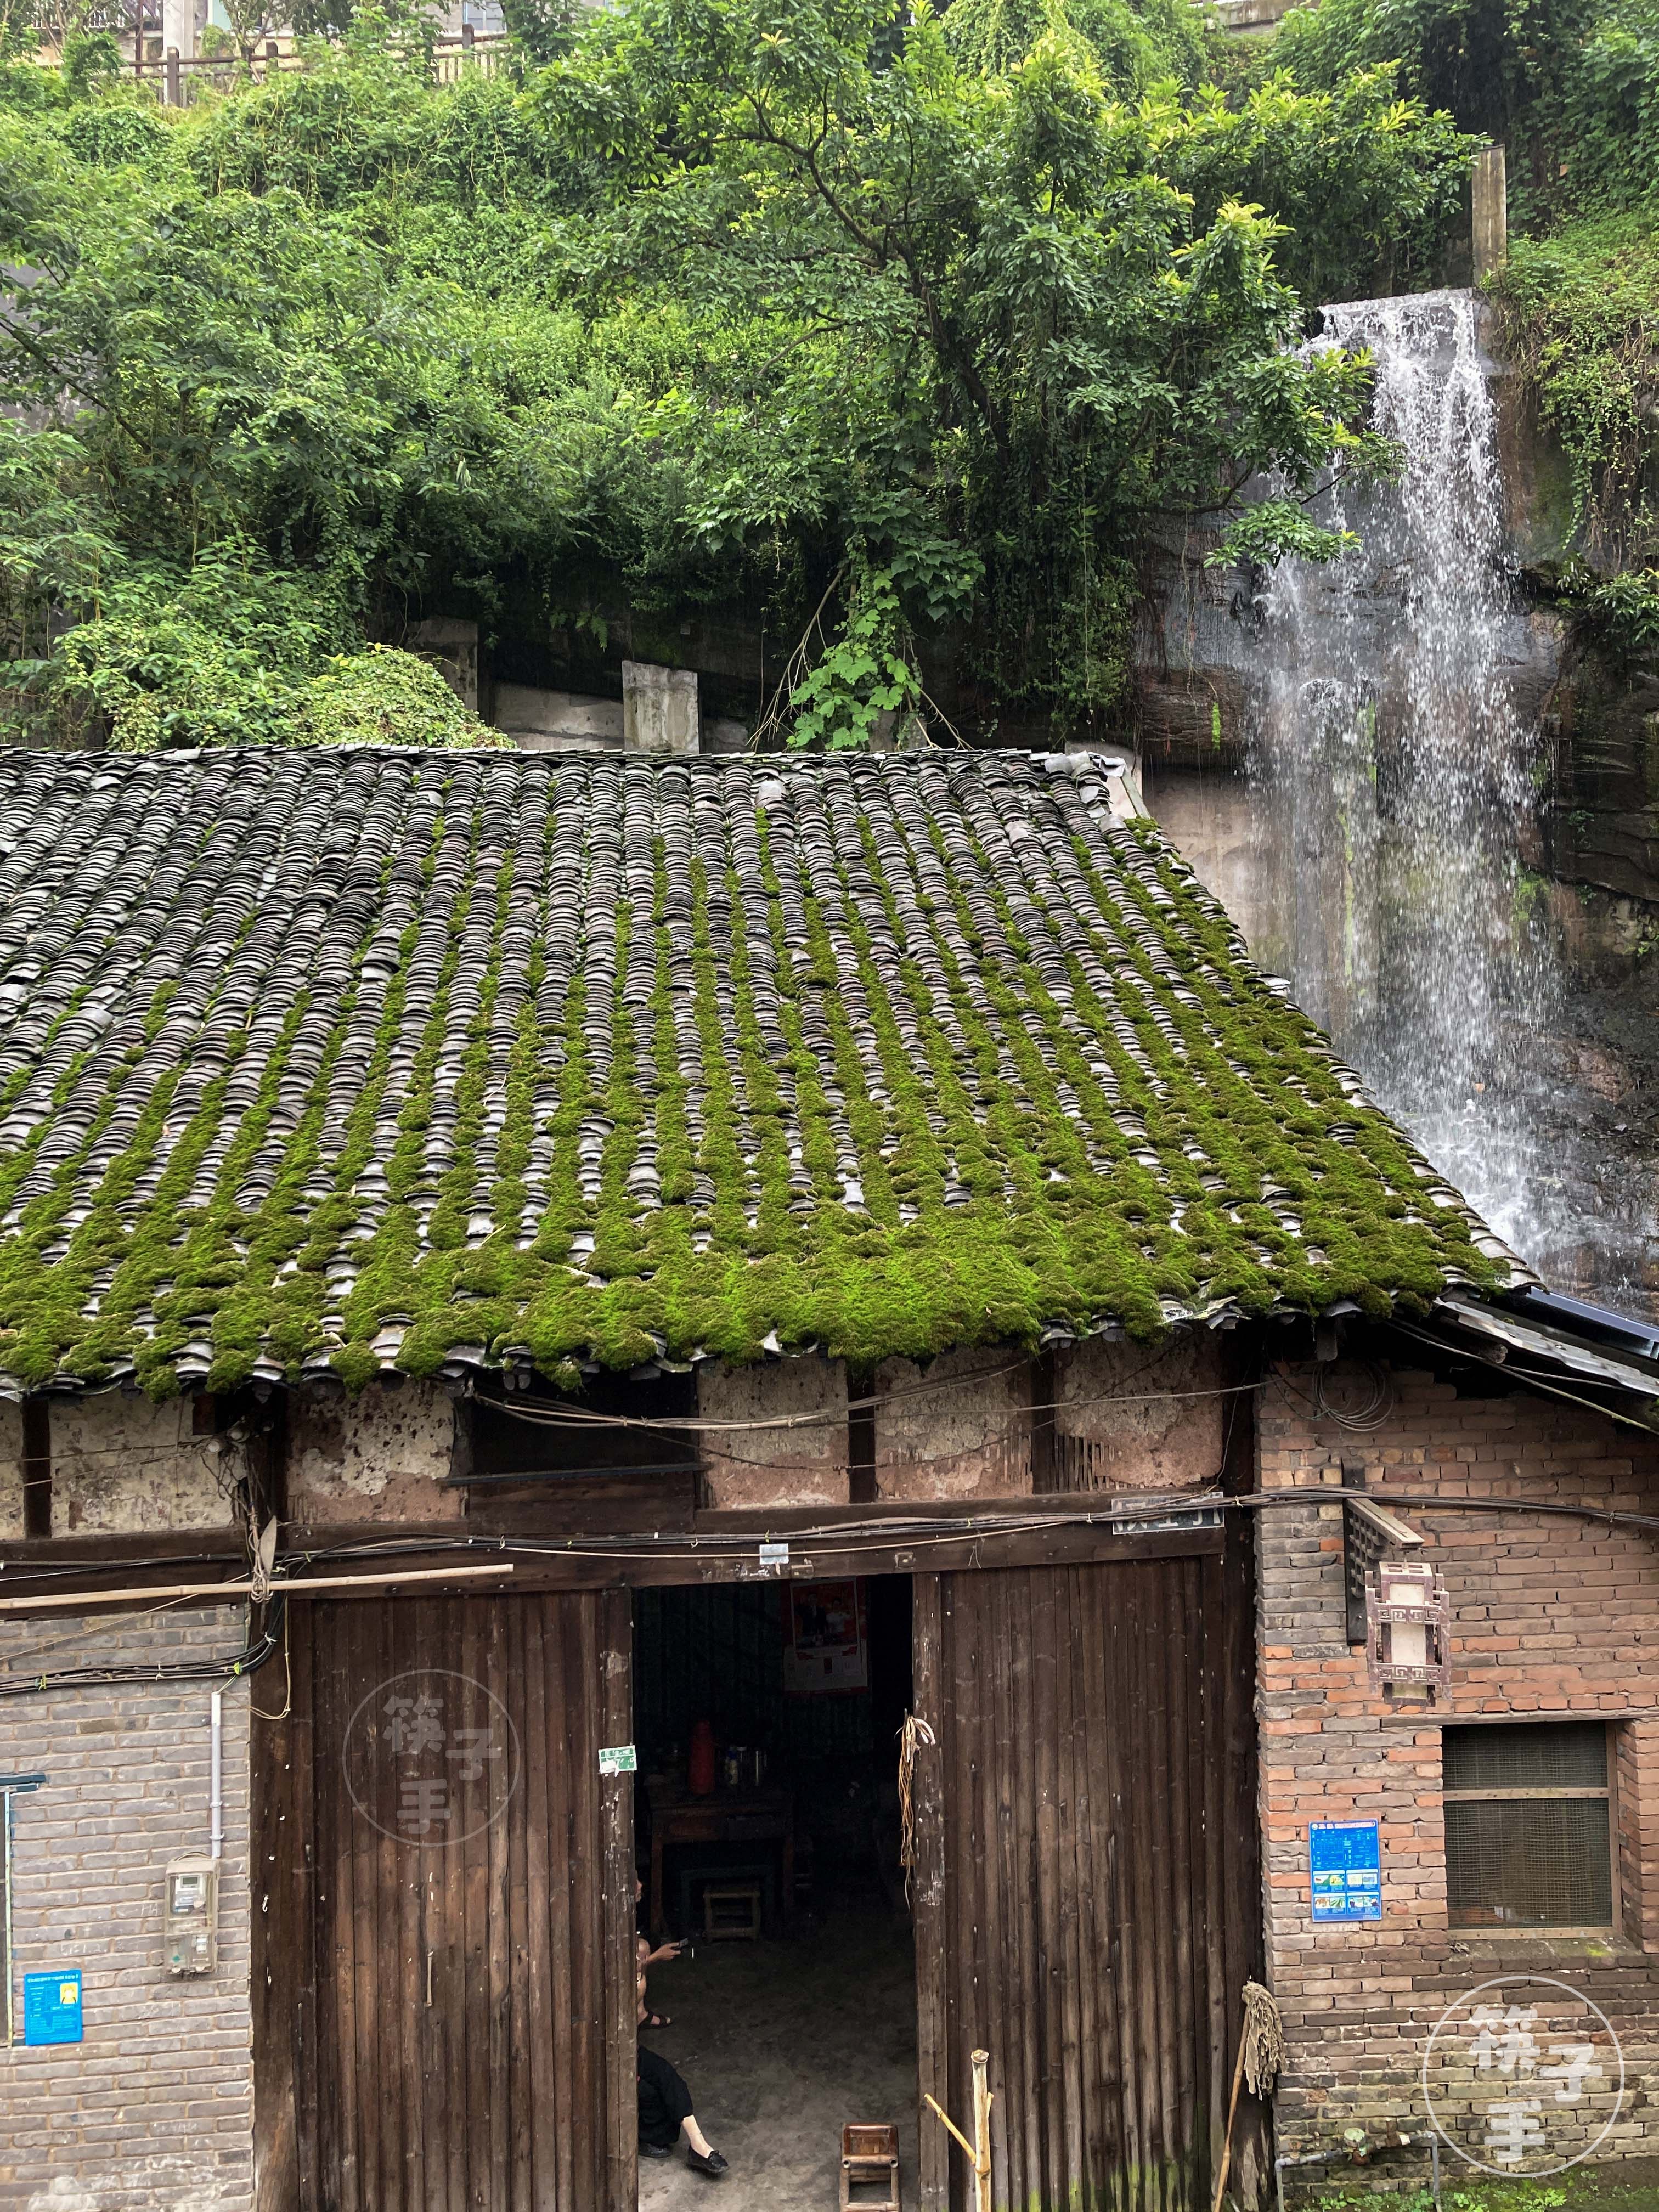 屋后是瀑布、屋前是长江、屋顶上满青苔